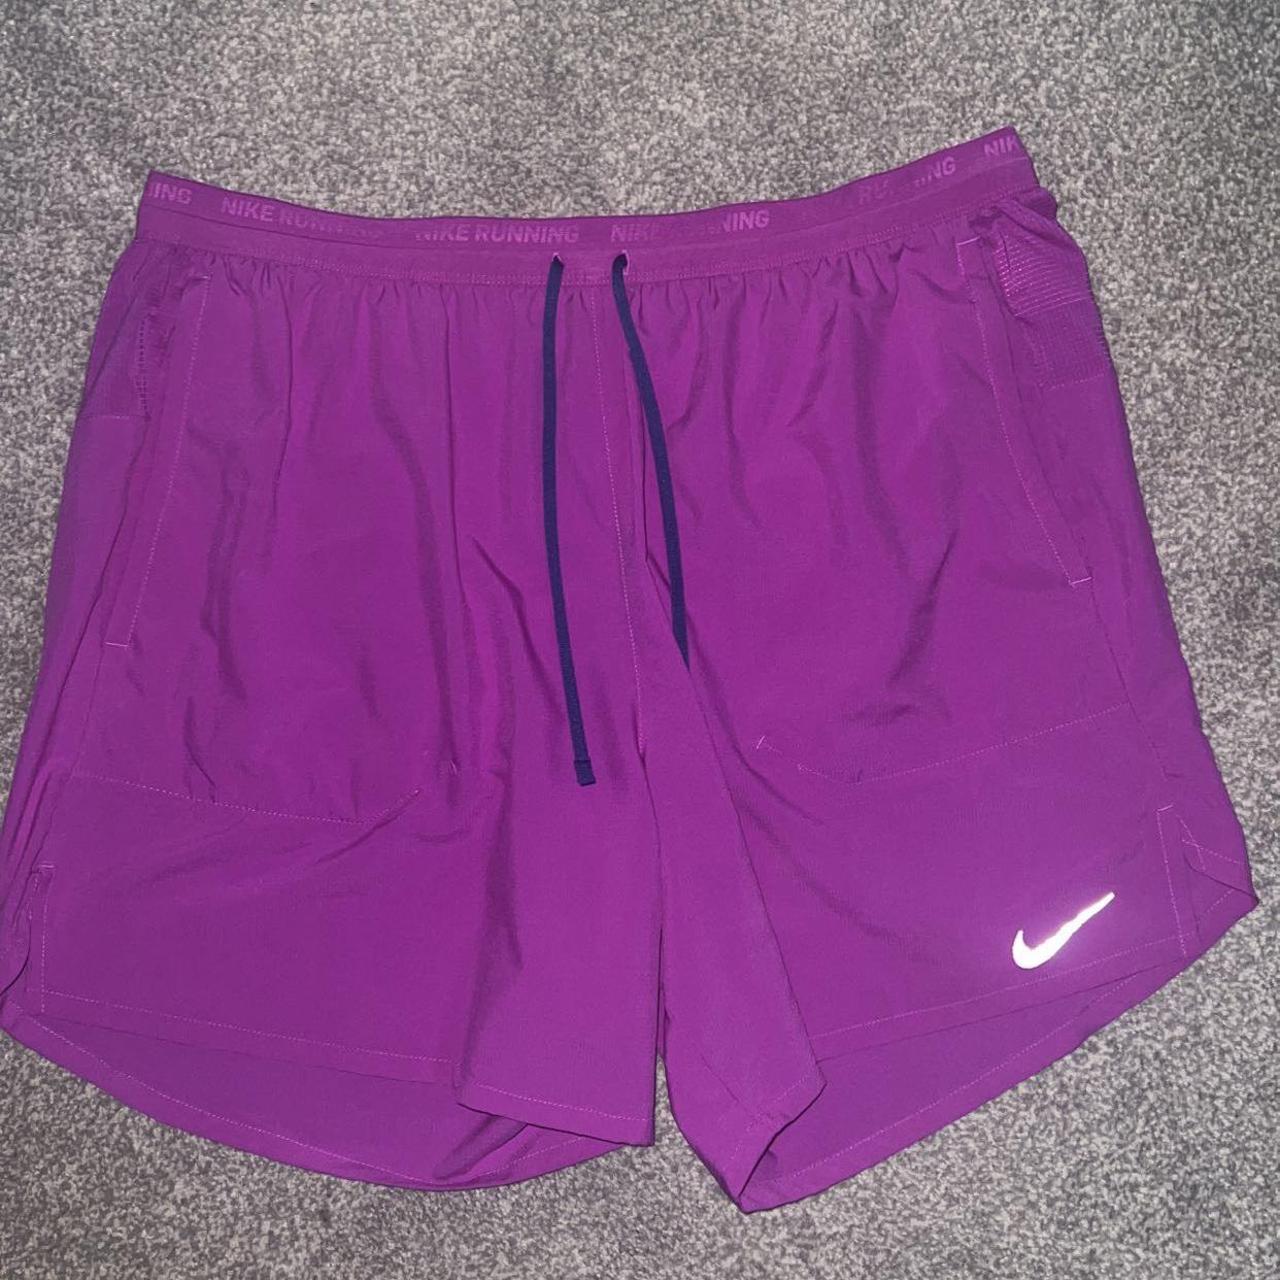 Nike Men's Purple Shorts | Depop